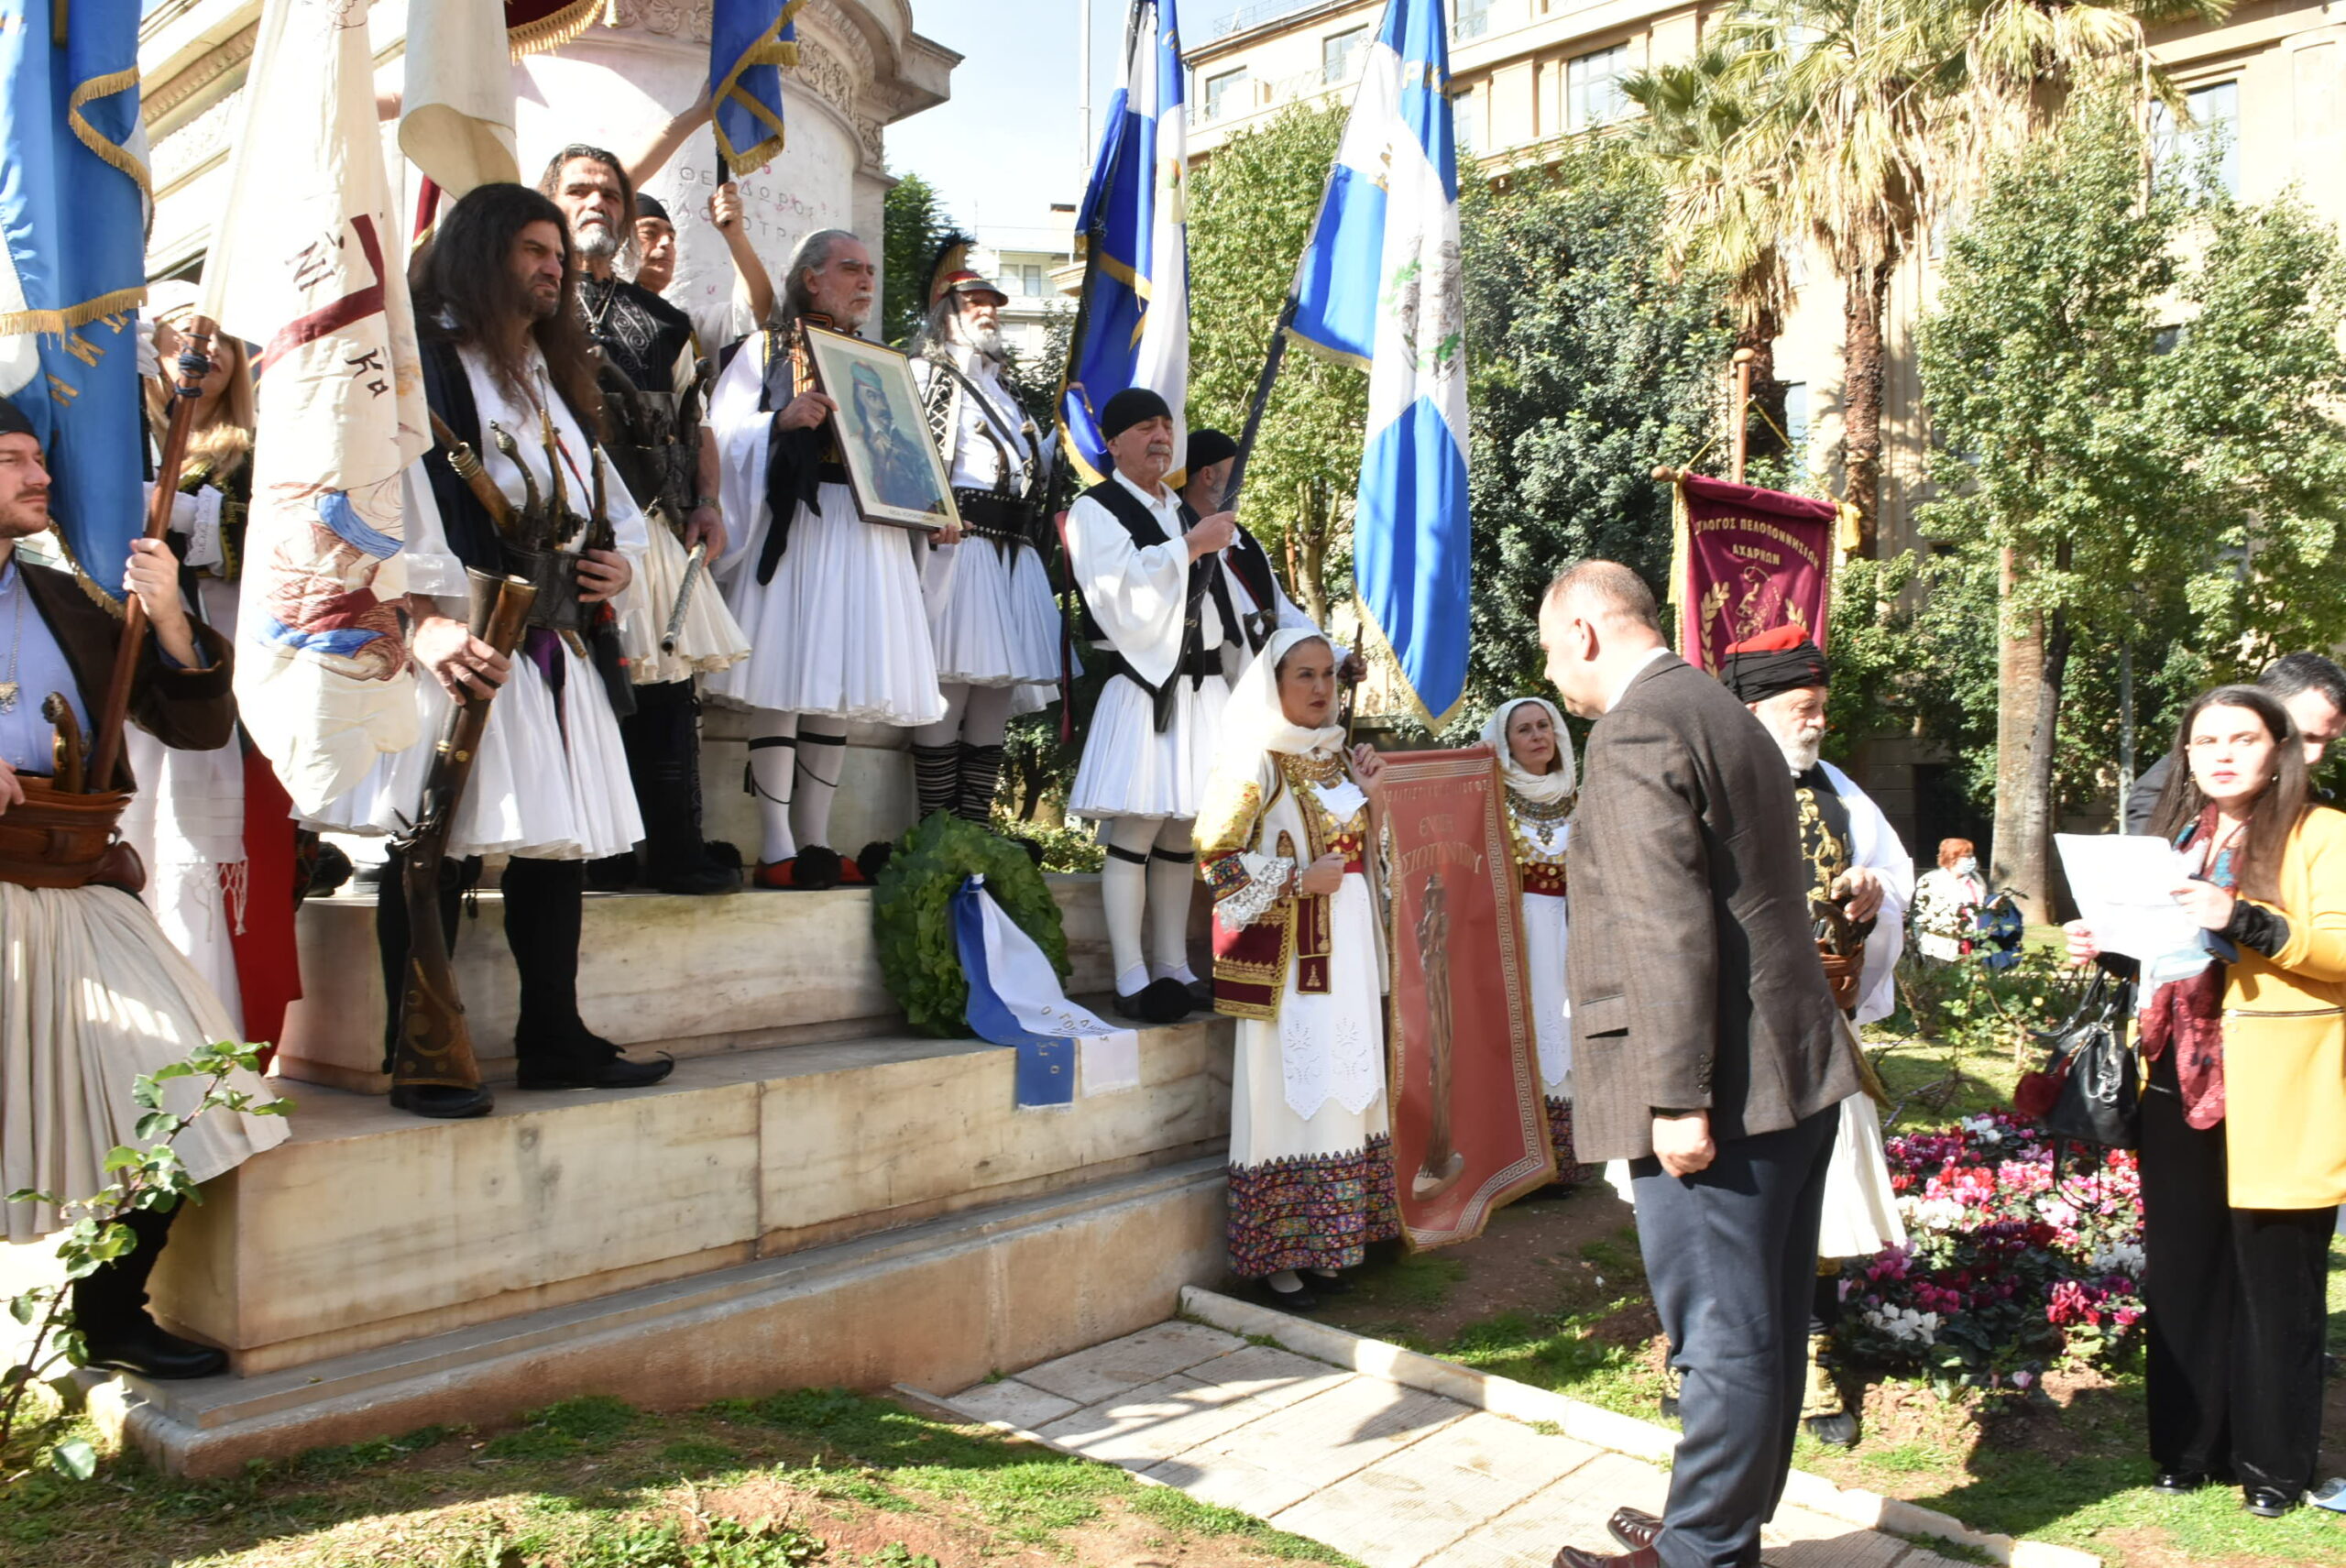 Η ετήσια εκδήλωση της Παγγορτυνιακής Ένωσης στη μνήμη του Θεόδωρου Κολοκοτρώνη